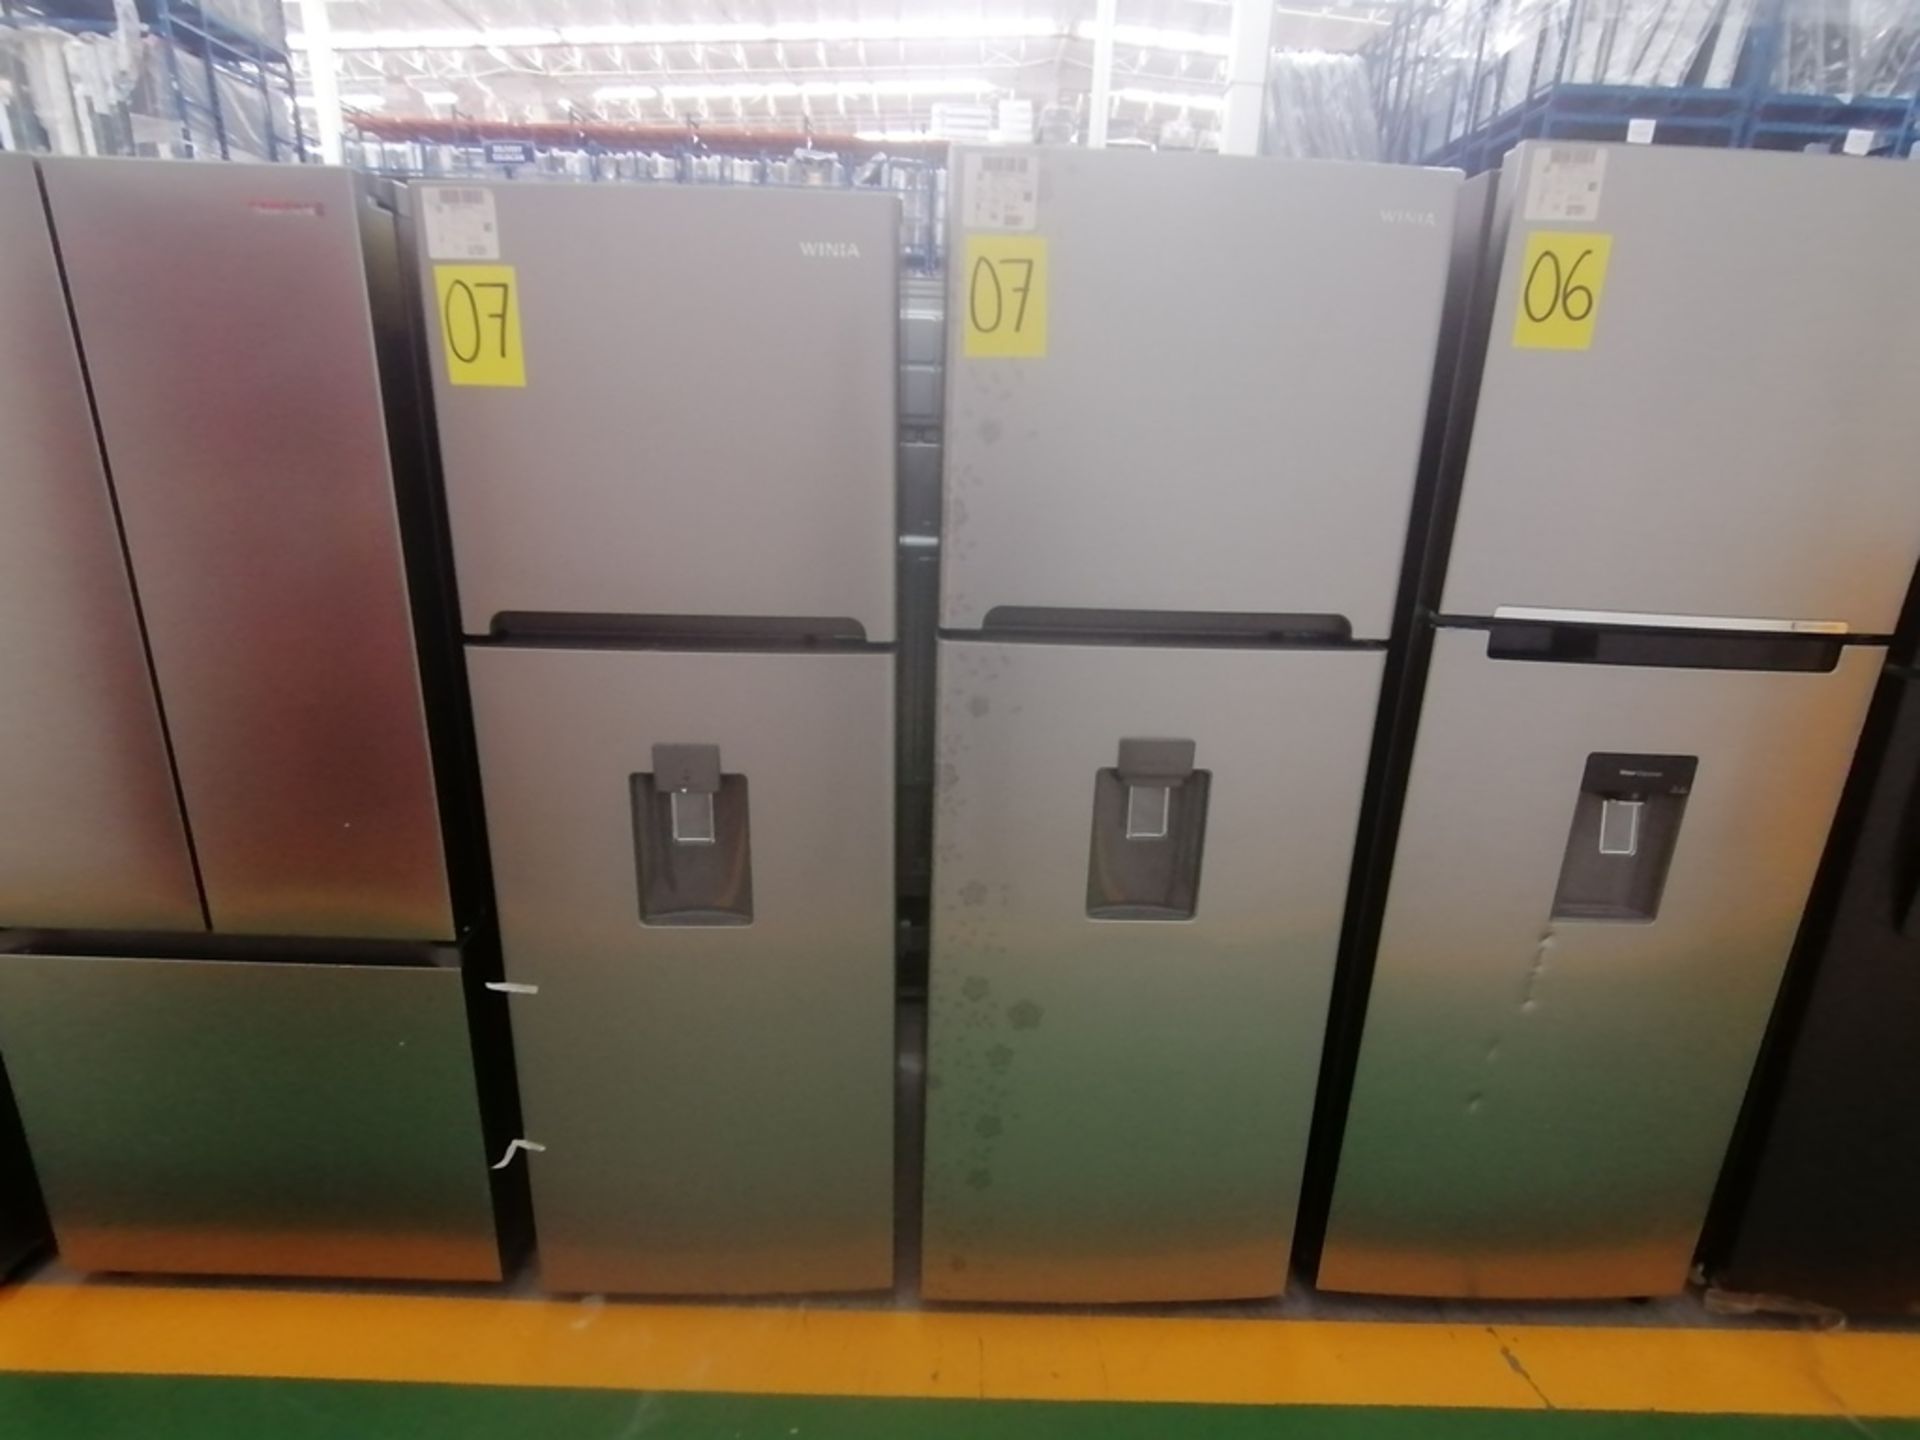 Lote de 2 refrigeradores incluye: 1 Refrigerador con dispensador de agua, Marca Winia, Modelo DFR40 - Image 3 of 16